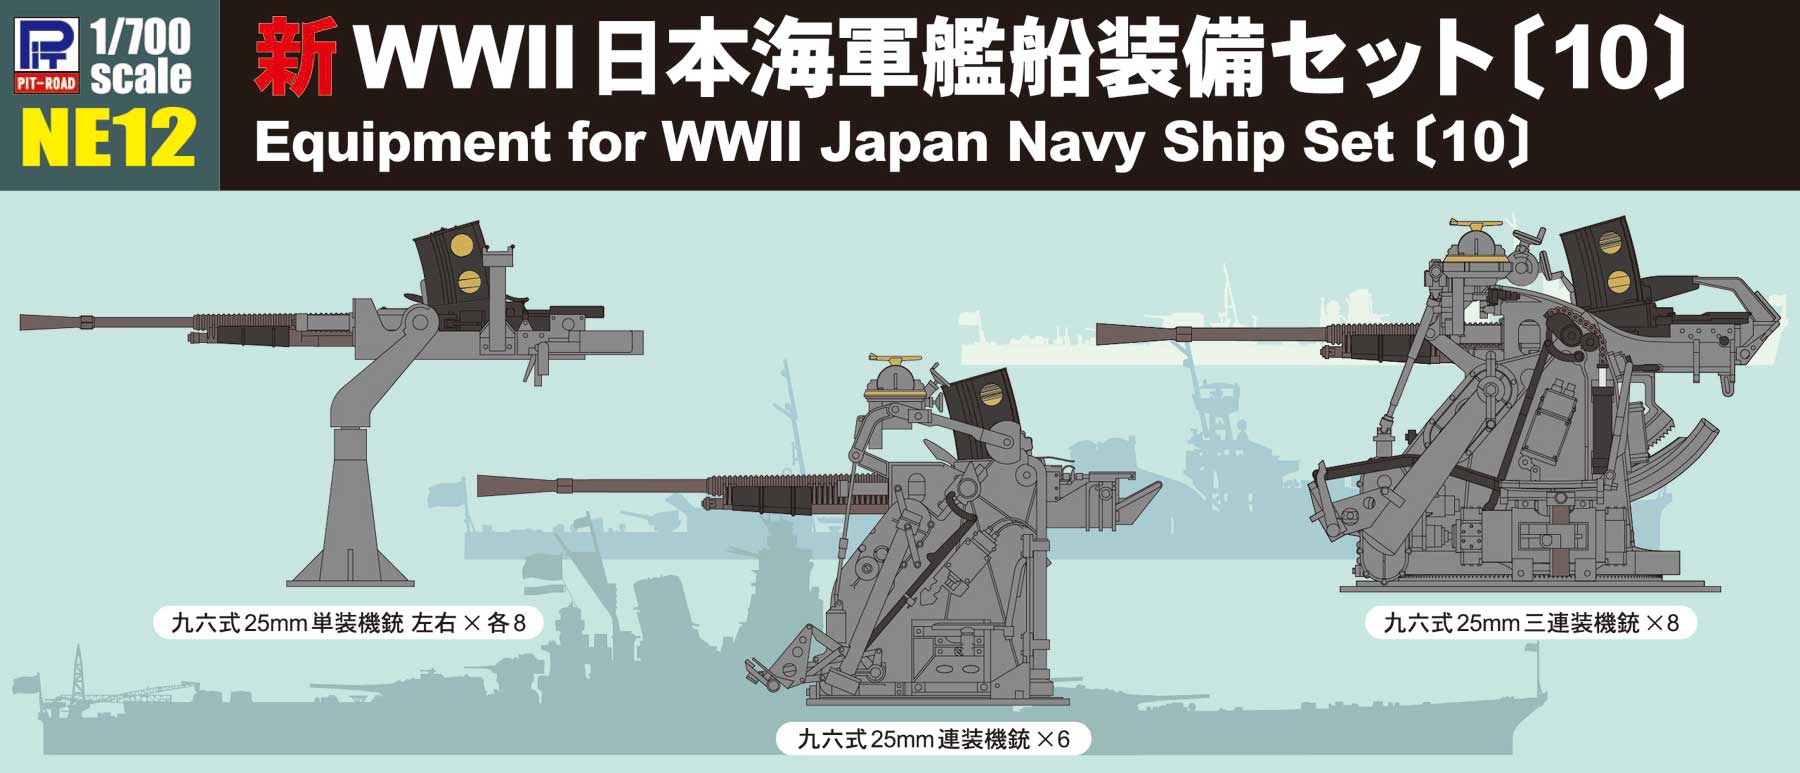 1/700 新WWII 日本海軍艦船装備セット〔10〕